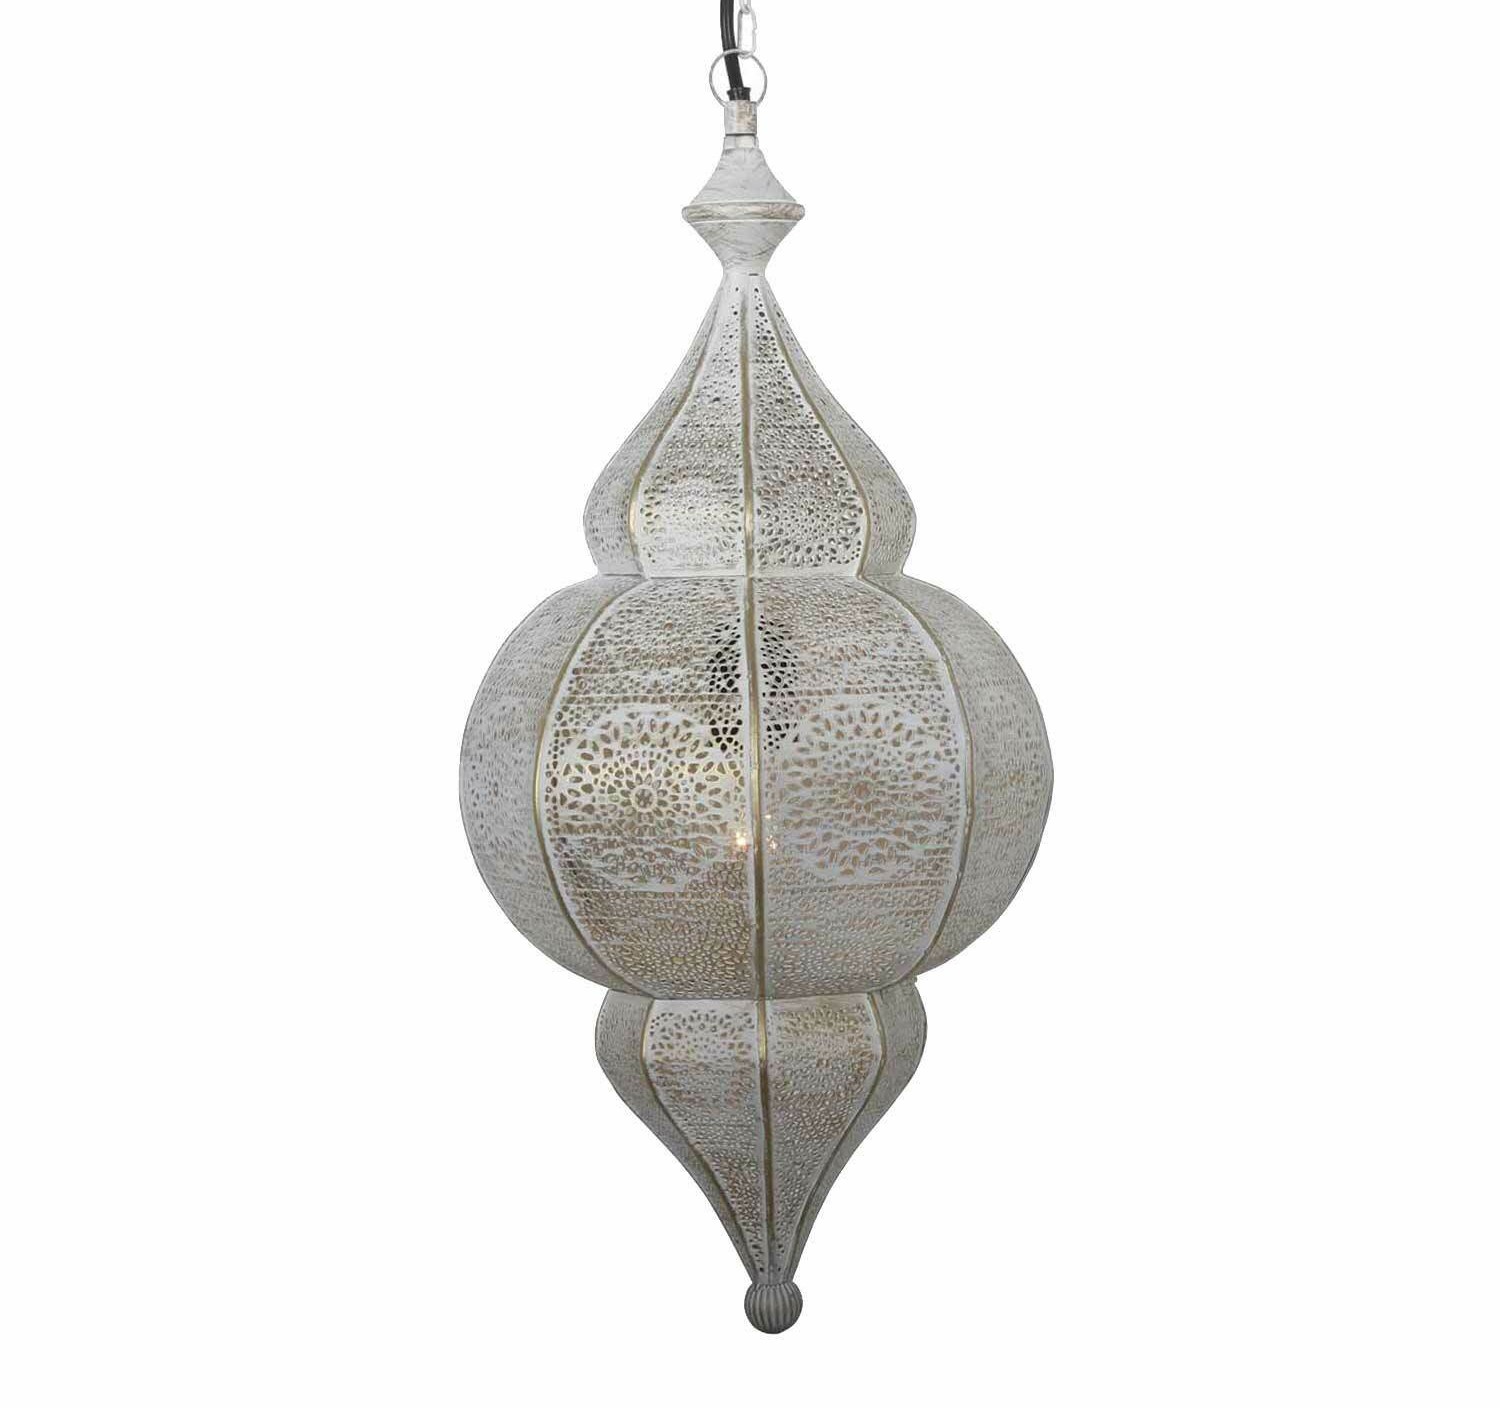 Orientalische Lampe Pendelleuchte Design Farbe Shaby Weiss Gold